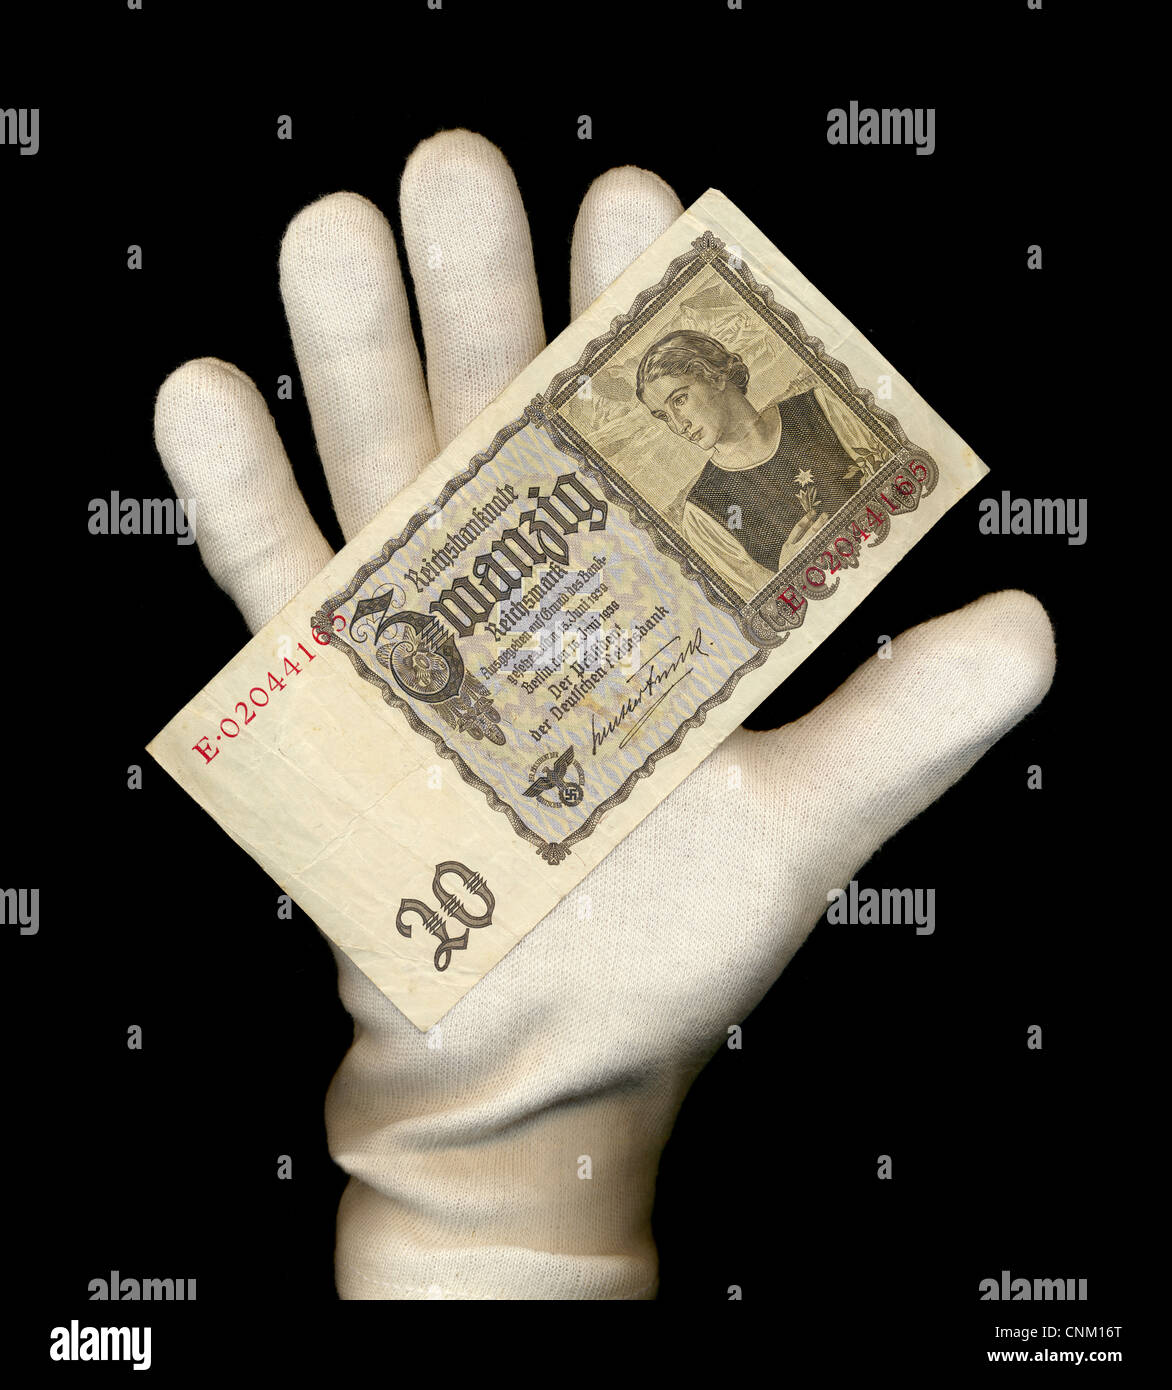 Une main avec un gant blanc est titulaire d'un billet de banque, Reichsbank, valeur 20 Reichmarks, 1939, Germany, Europe Banque D'Images